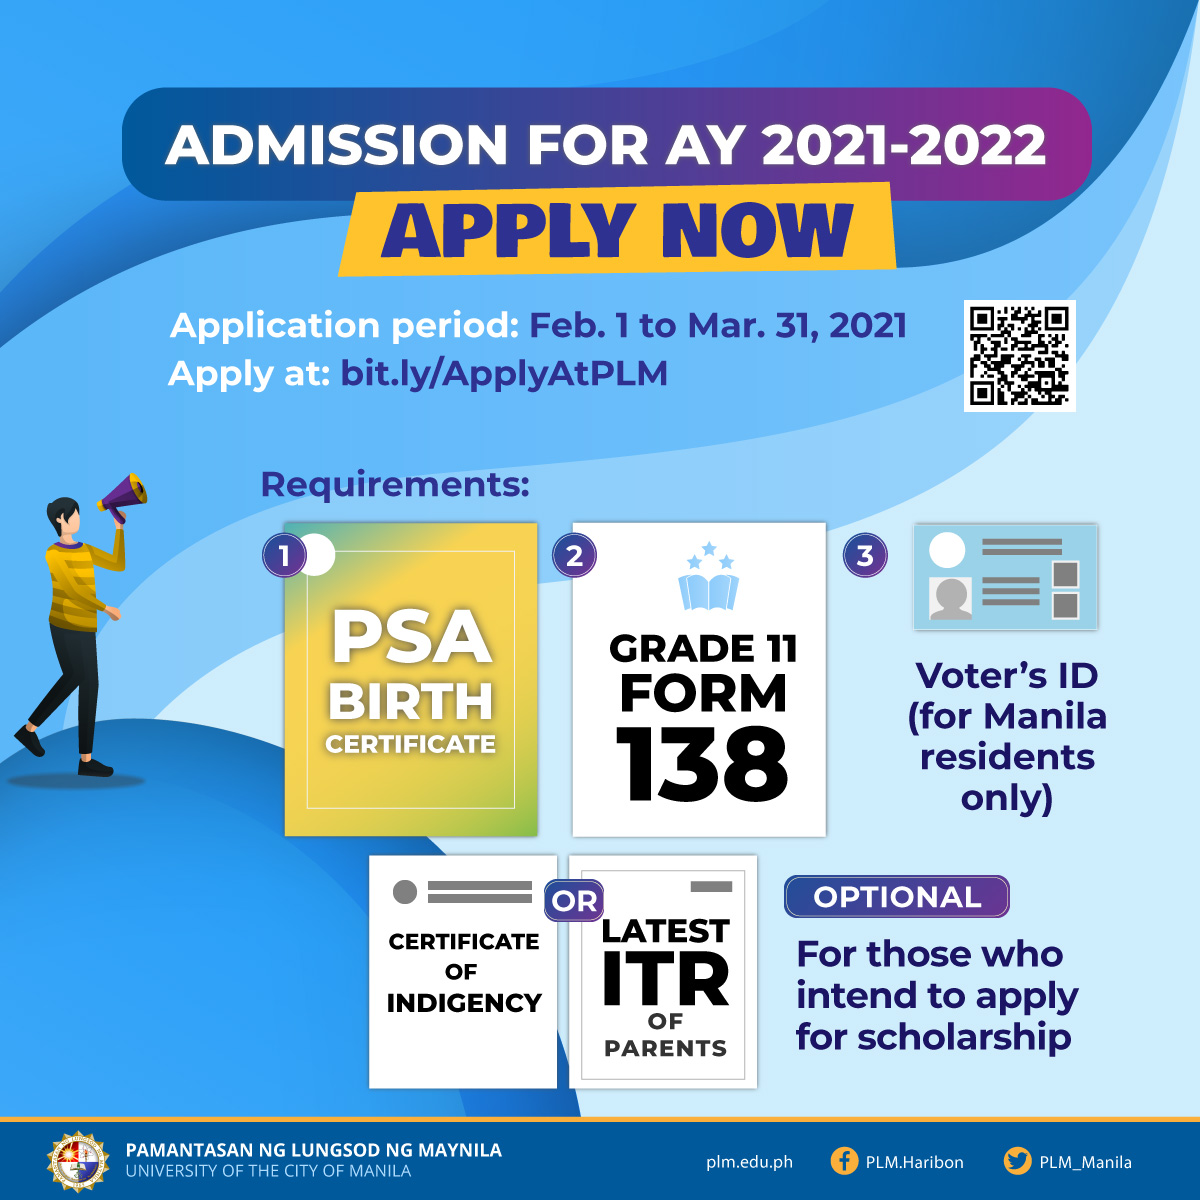 PLM freshmen application for AY 2021-2022 from Feb. 1-Mar. 31, 2021